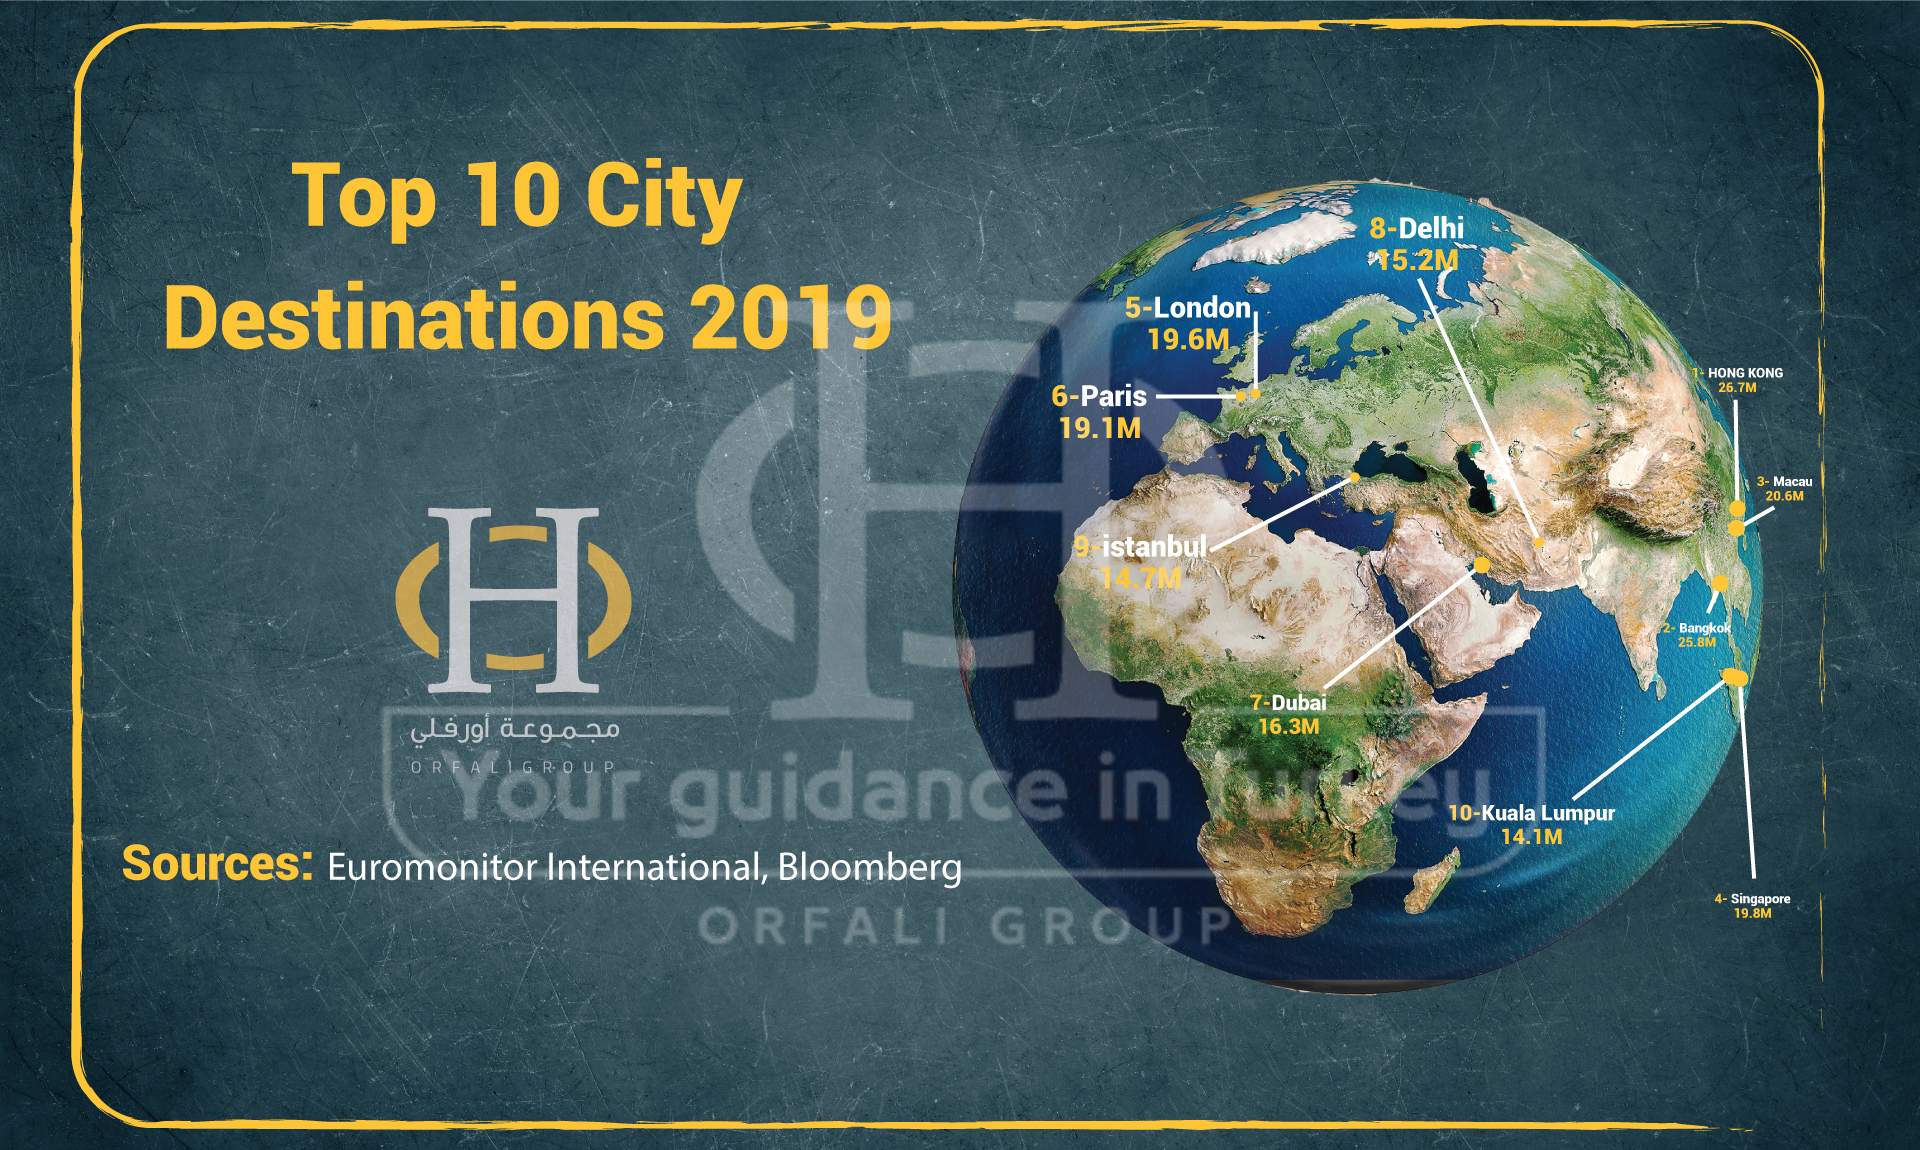 أكثر 10 مدن زيارةً على مستوى العالم لعام 2019